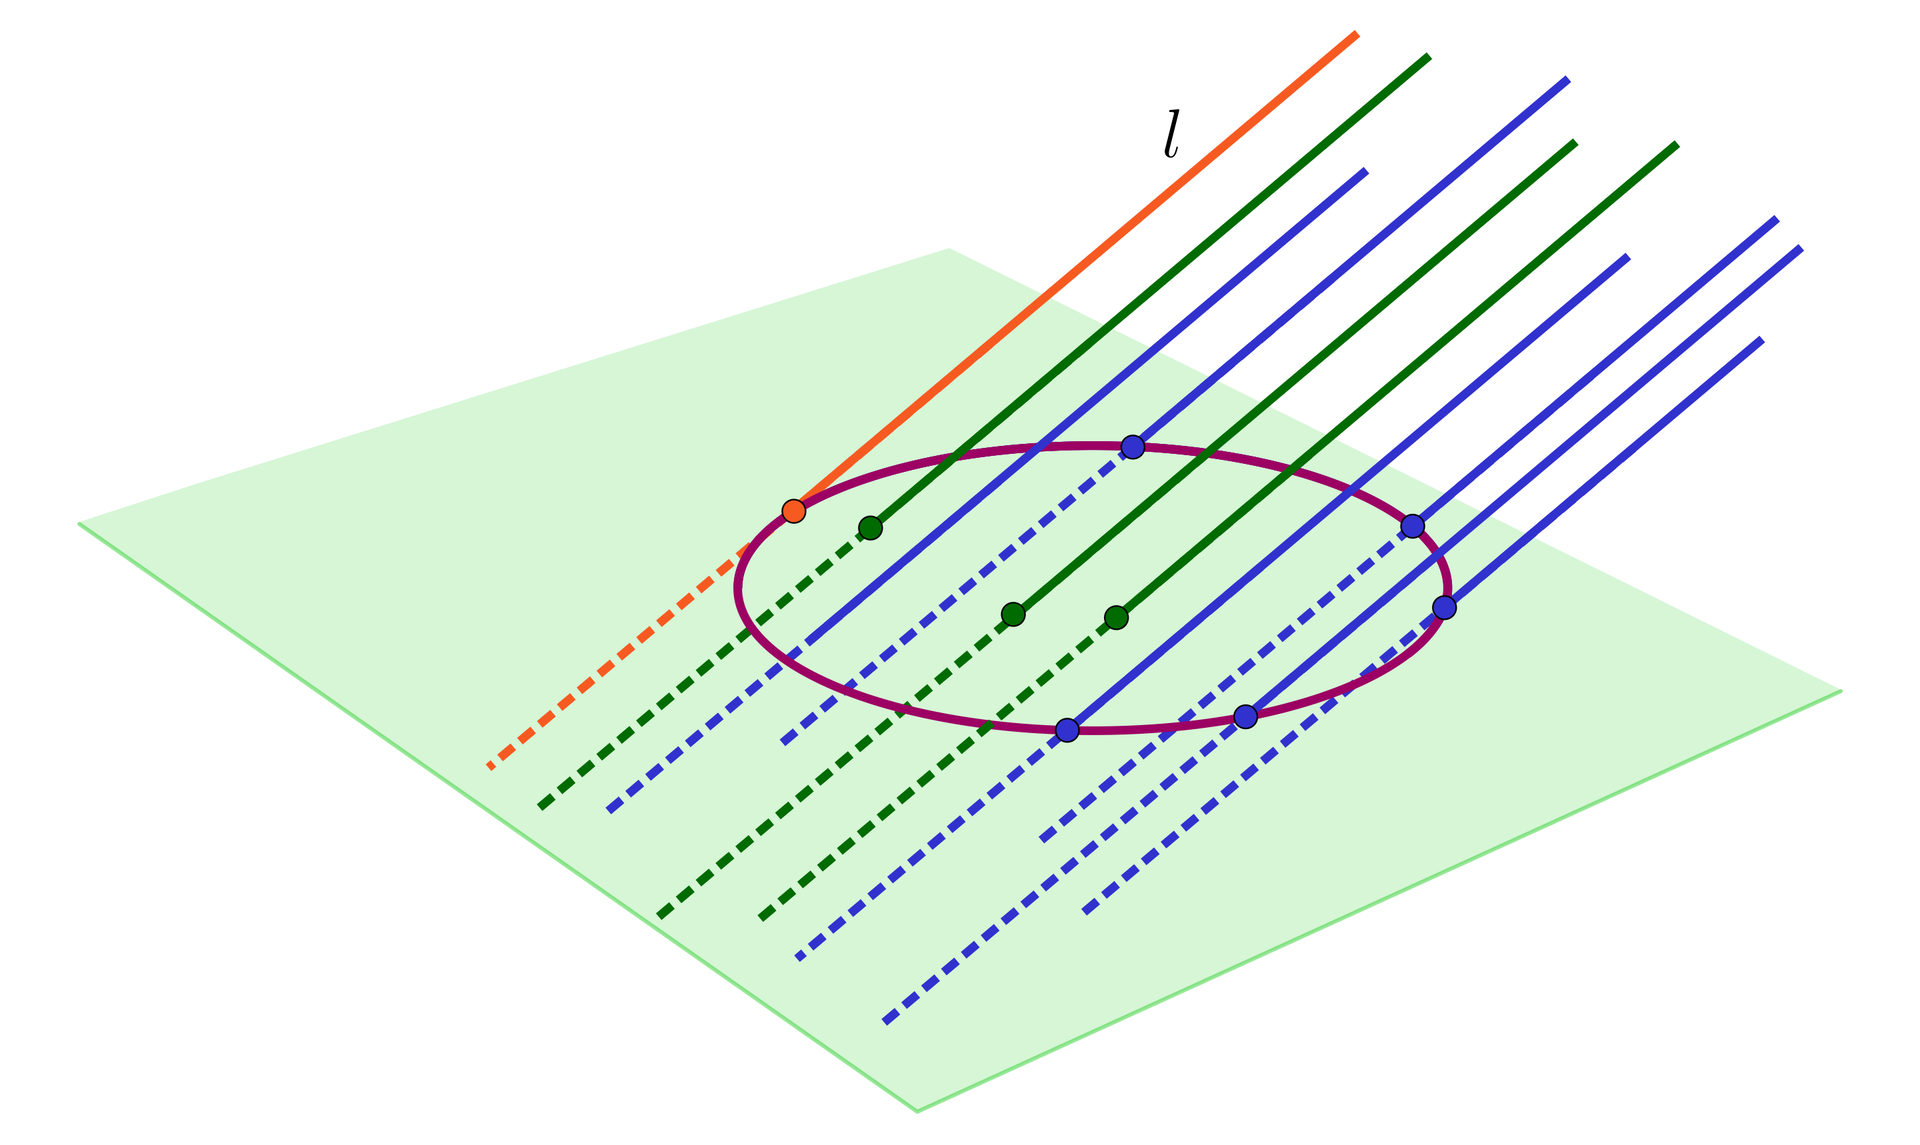 Ilustracja przedstawia płaszczyznę przez którą przechodzi  dziesięć równoległych do siebie prostych. Jedna prosta zaznaczona kolorem pomarańczowym przechodzi przez okrąg który został zaznaczony na płaszczyźnie i jest podpisana literą l. Sześć prostych zaznaczonych kolorem niebieskim również  przecinają płaszczyznę na okręgu , a trzy zielone proste przecinają płaszczyznę wewnątrz okręgu.